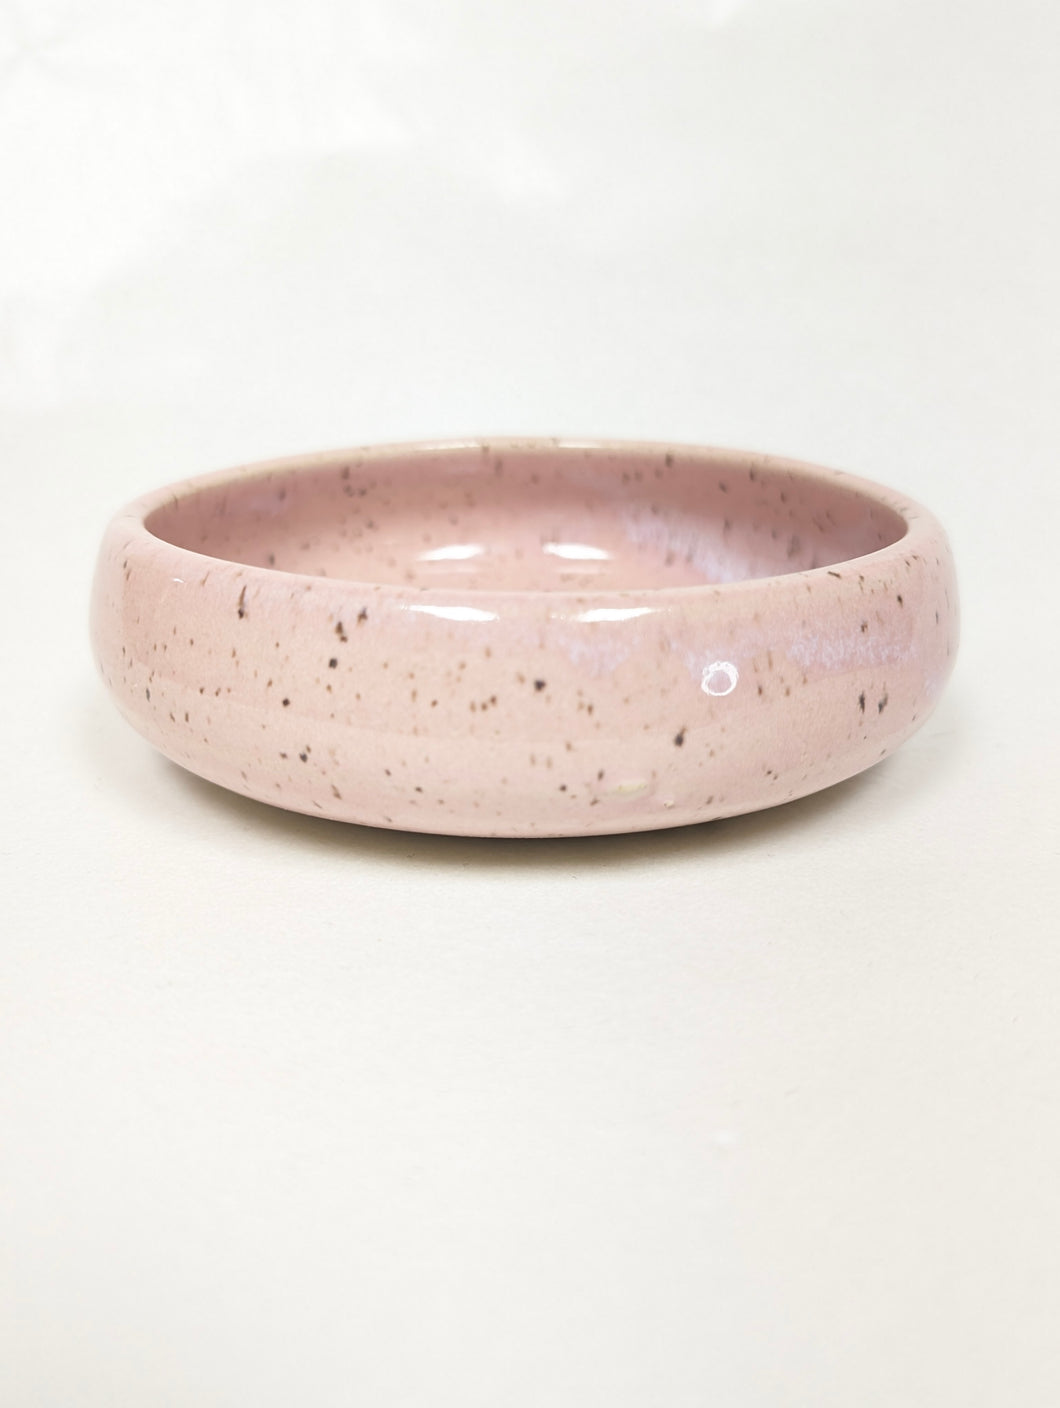 Pink Candy Bowl , by Jillian Sareault